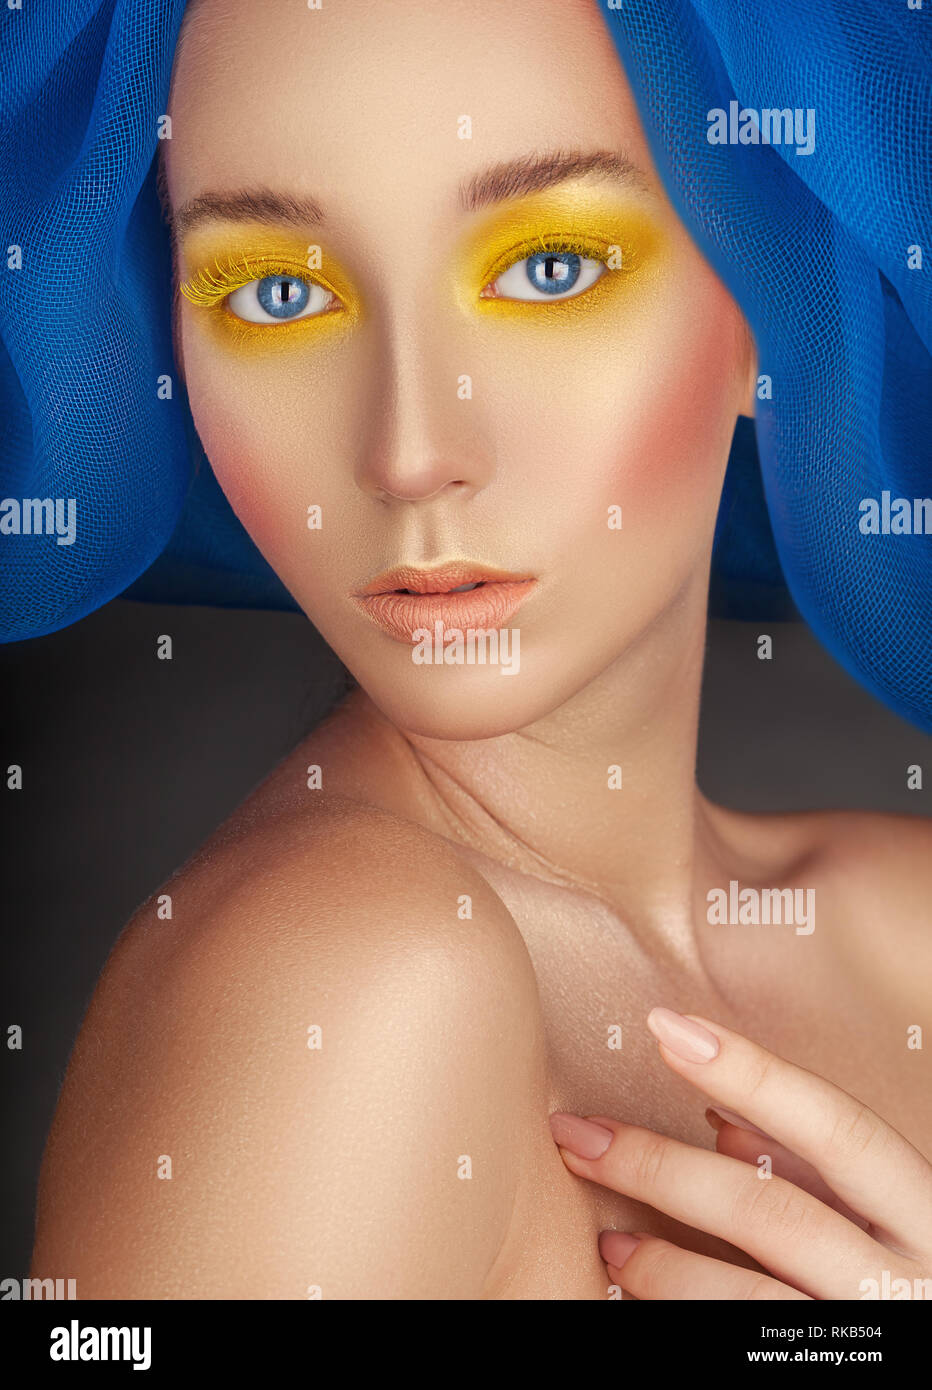 Ritratto di una donna bellissima con la moda per il make-up, luminoso giallo in polvere negli occhi e dŽcor blu sul suo capo Foto Stock